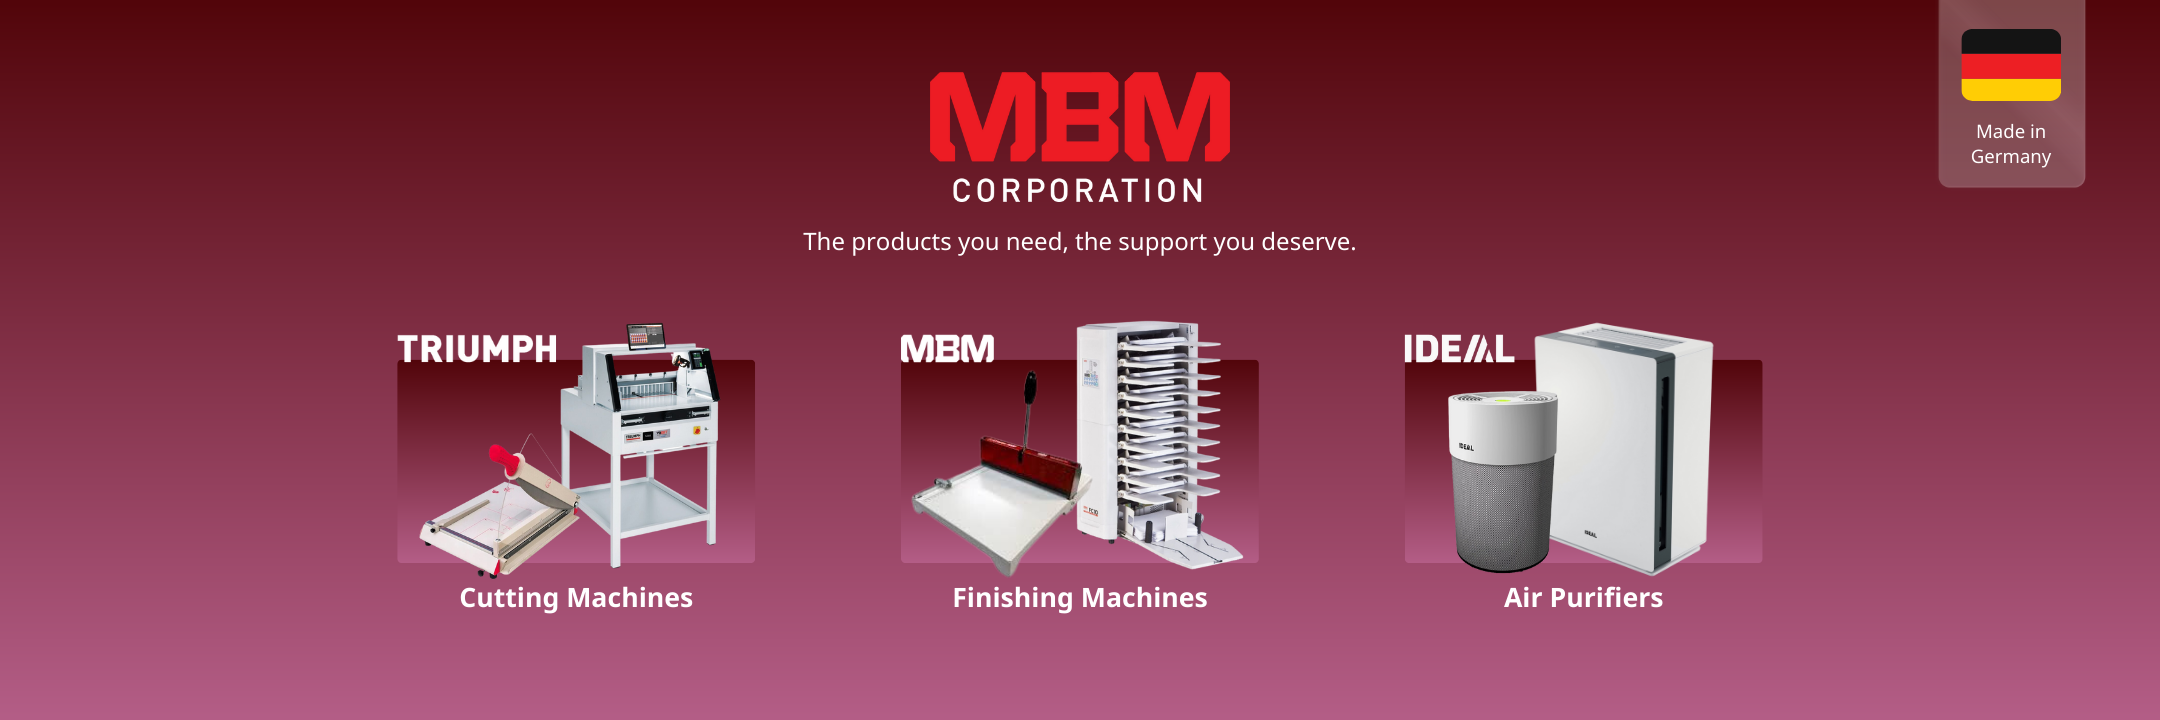 MBM-Machines-Desktop-Carousel-Banner-Slide-1-USA_1